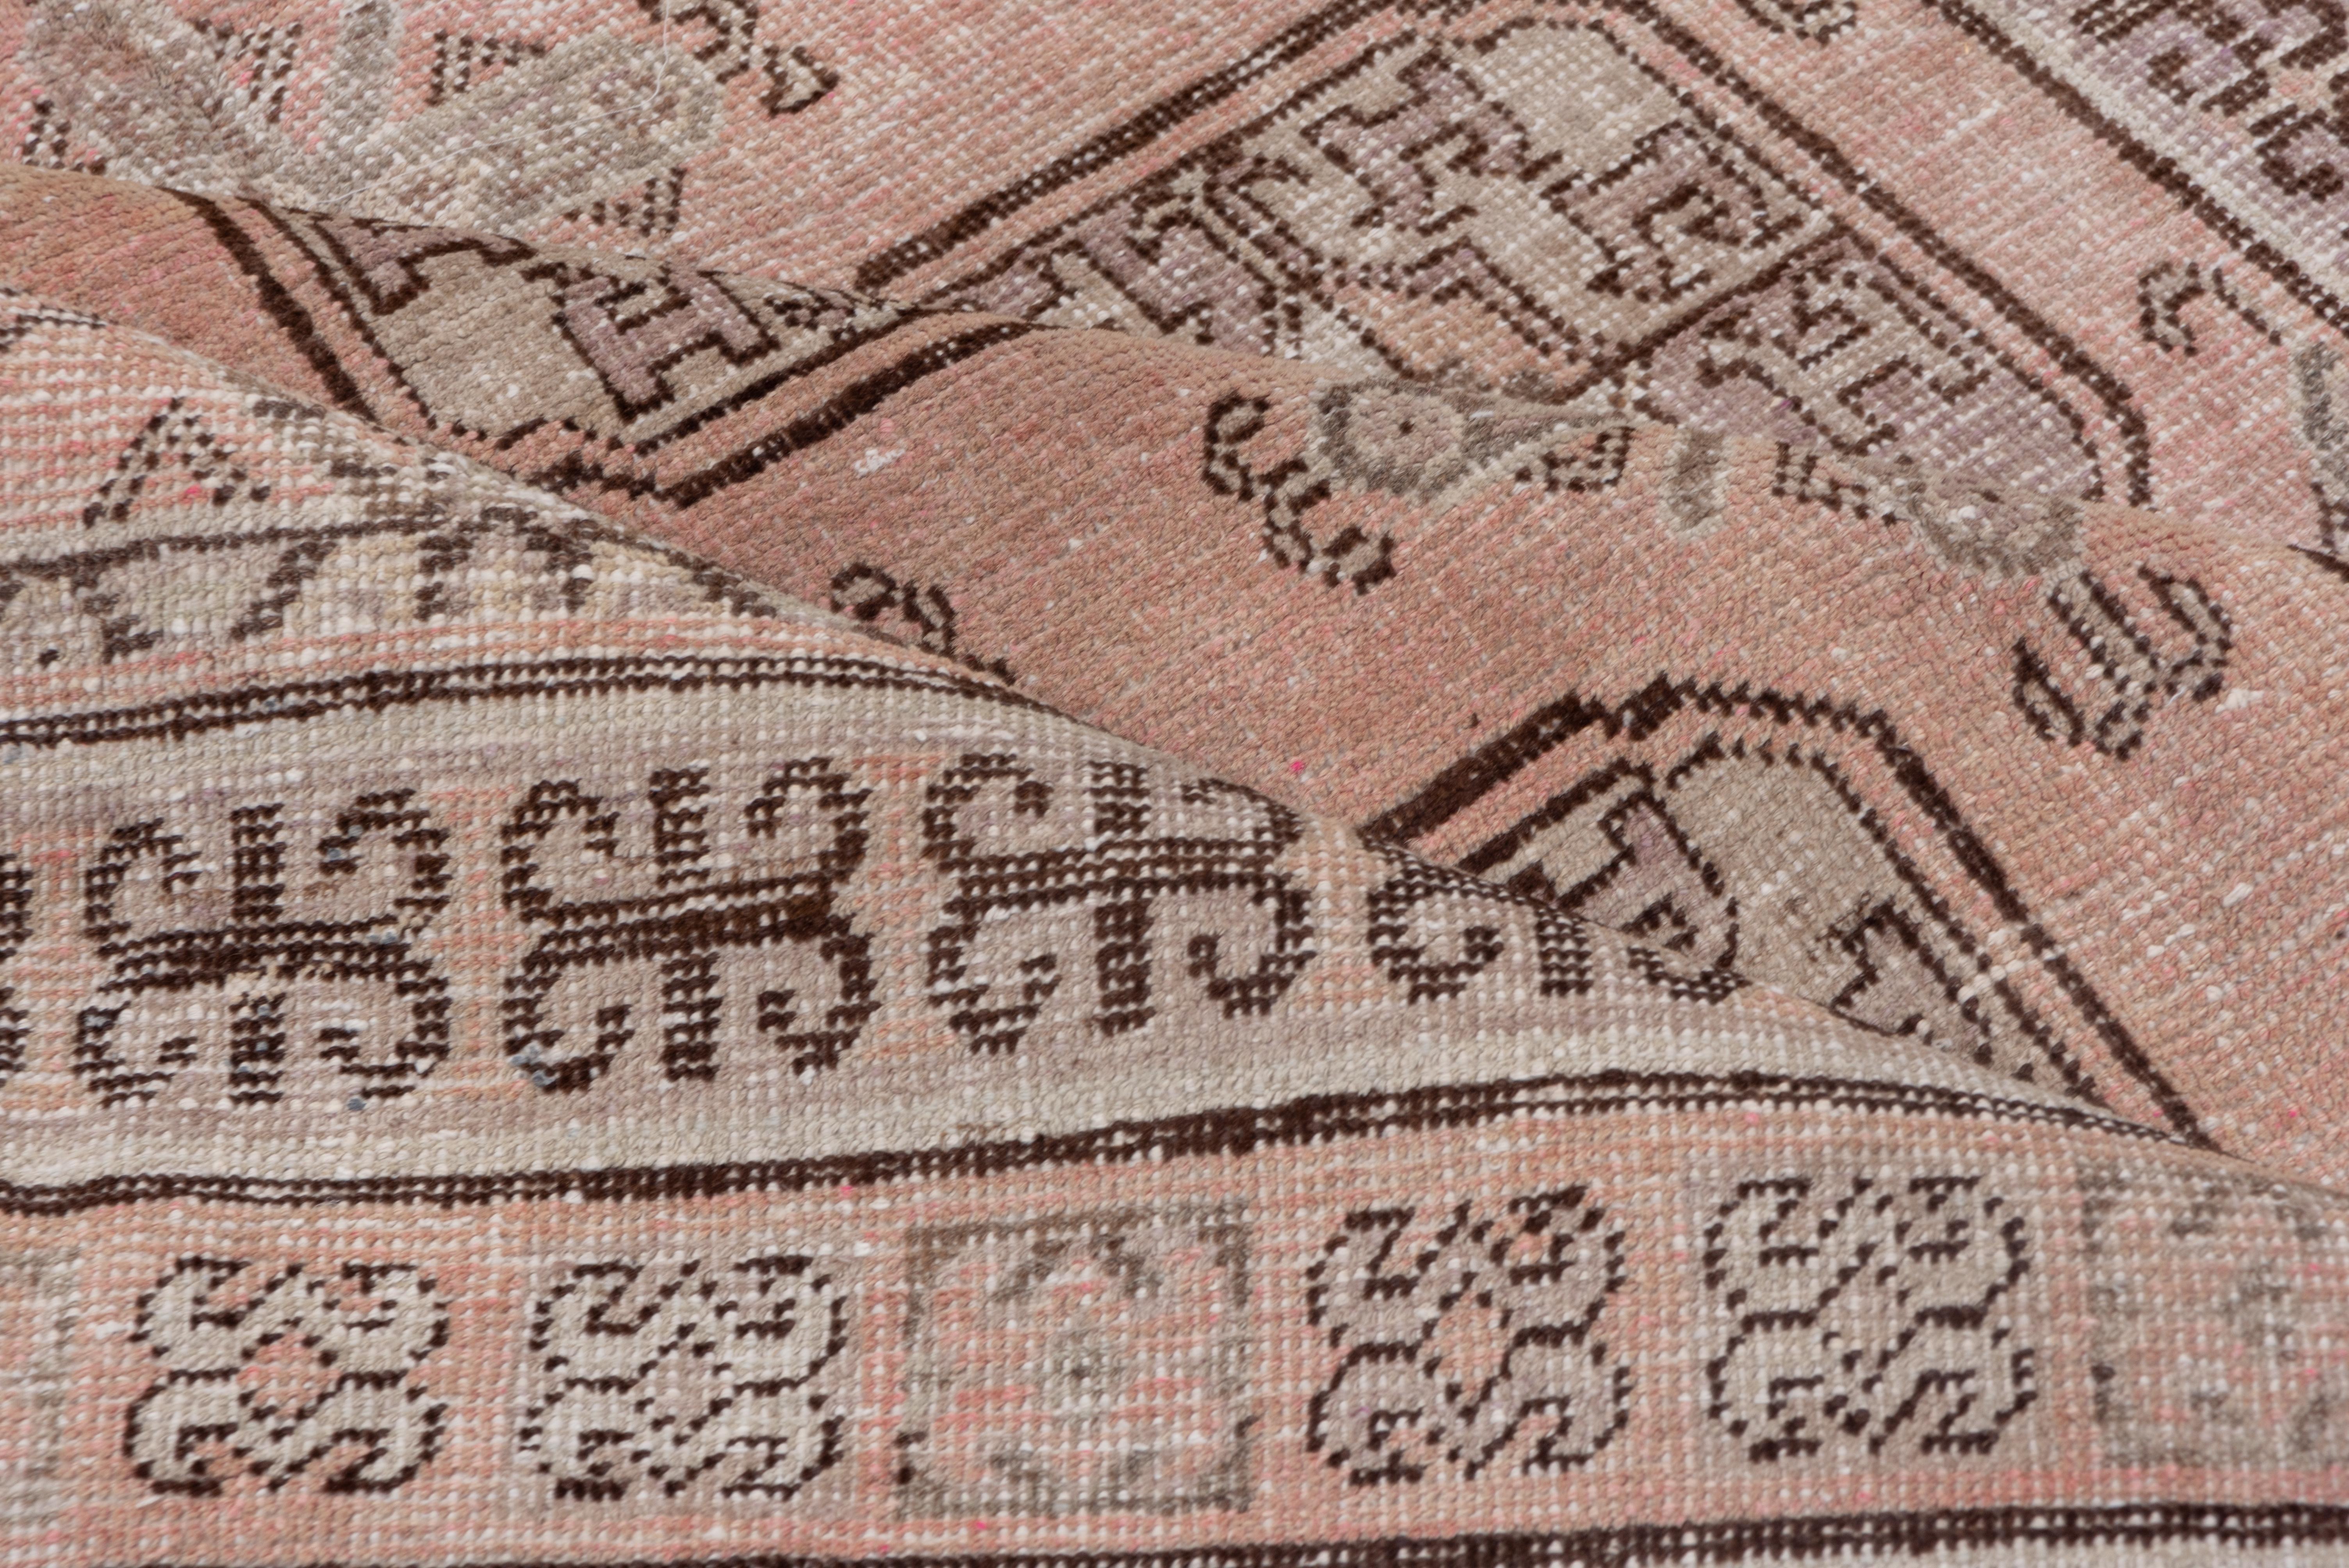 Dieser ostturkestanische Stadtteppich zeigt eine viersäulige Anordnung von achteckigen Tauk-Noska-Guln im turkmenischen Stil mit dazwischenliegenden Chemche-Minor-Guln auf strohrosa Grund, eingefaßt von doppelten Widderhörnern und anderen sich